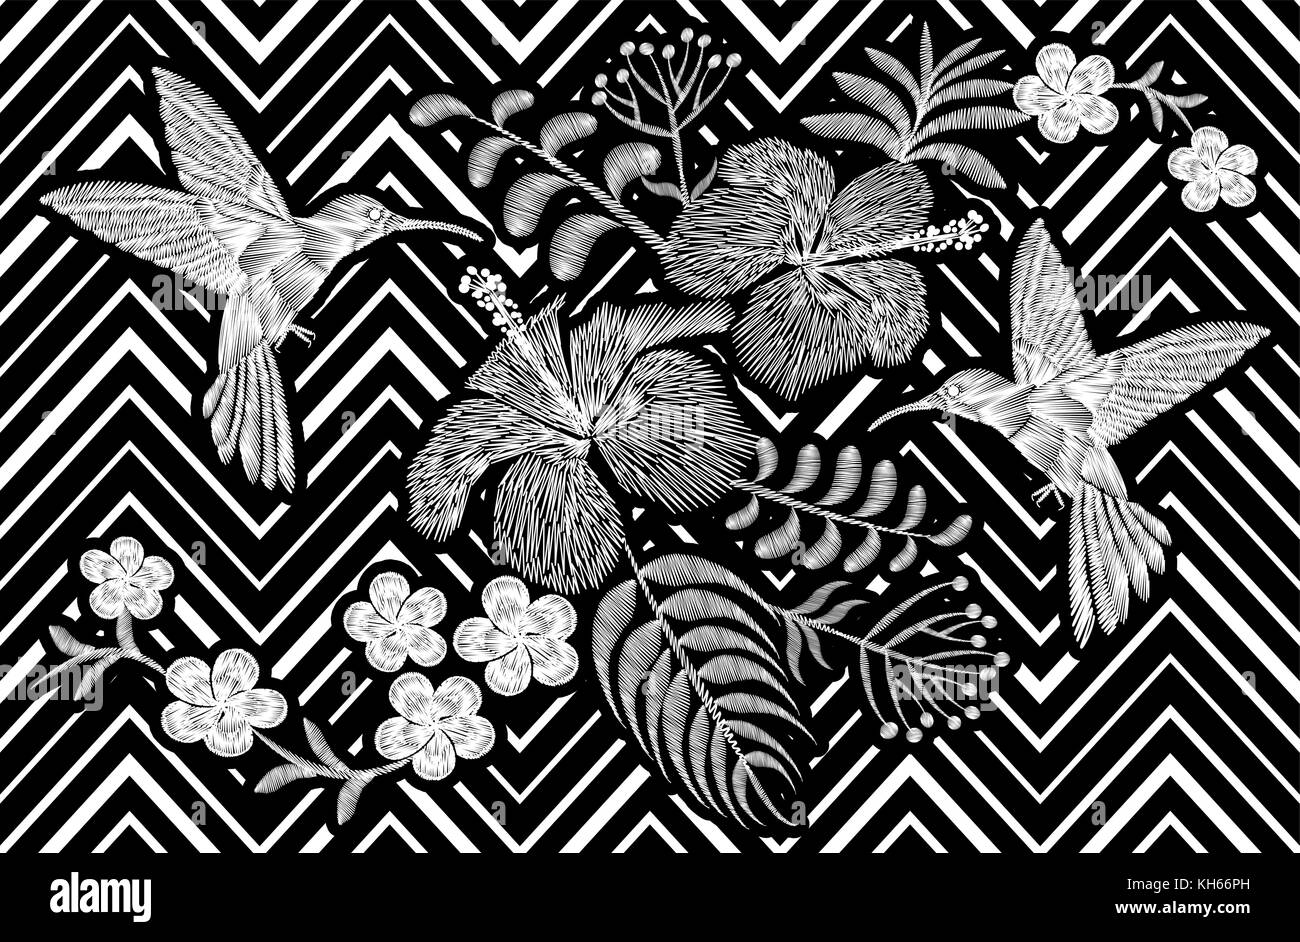 Kolibri um Hibiskus Blumen plumeria Frangipani exotischen tropischen Sommer blühen. Stickerei Mode patch Dekoration Textildruck black white stripe geometrischen Hintergrund Vorlage Stock Vektor